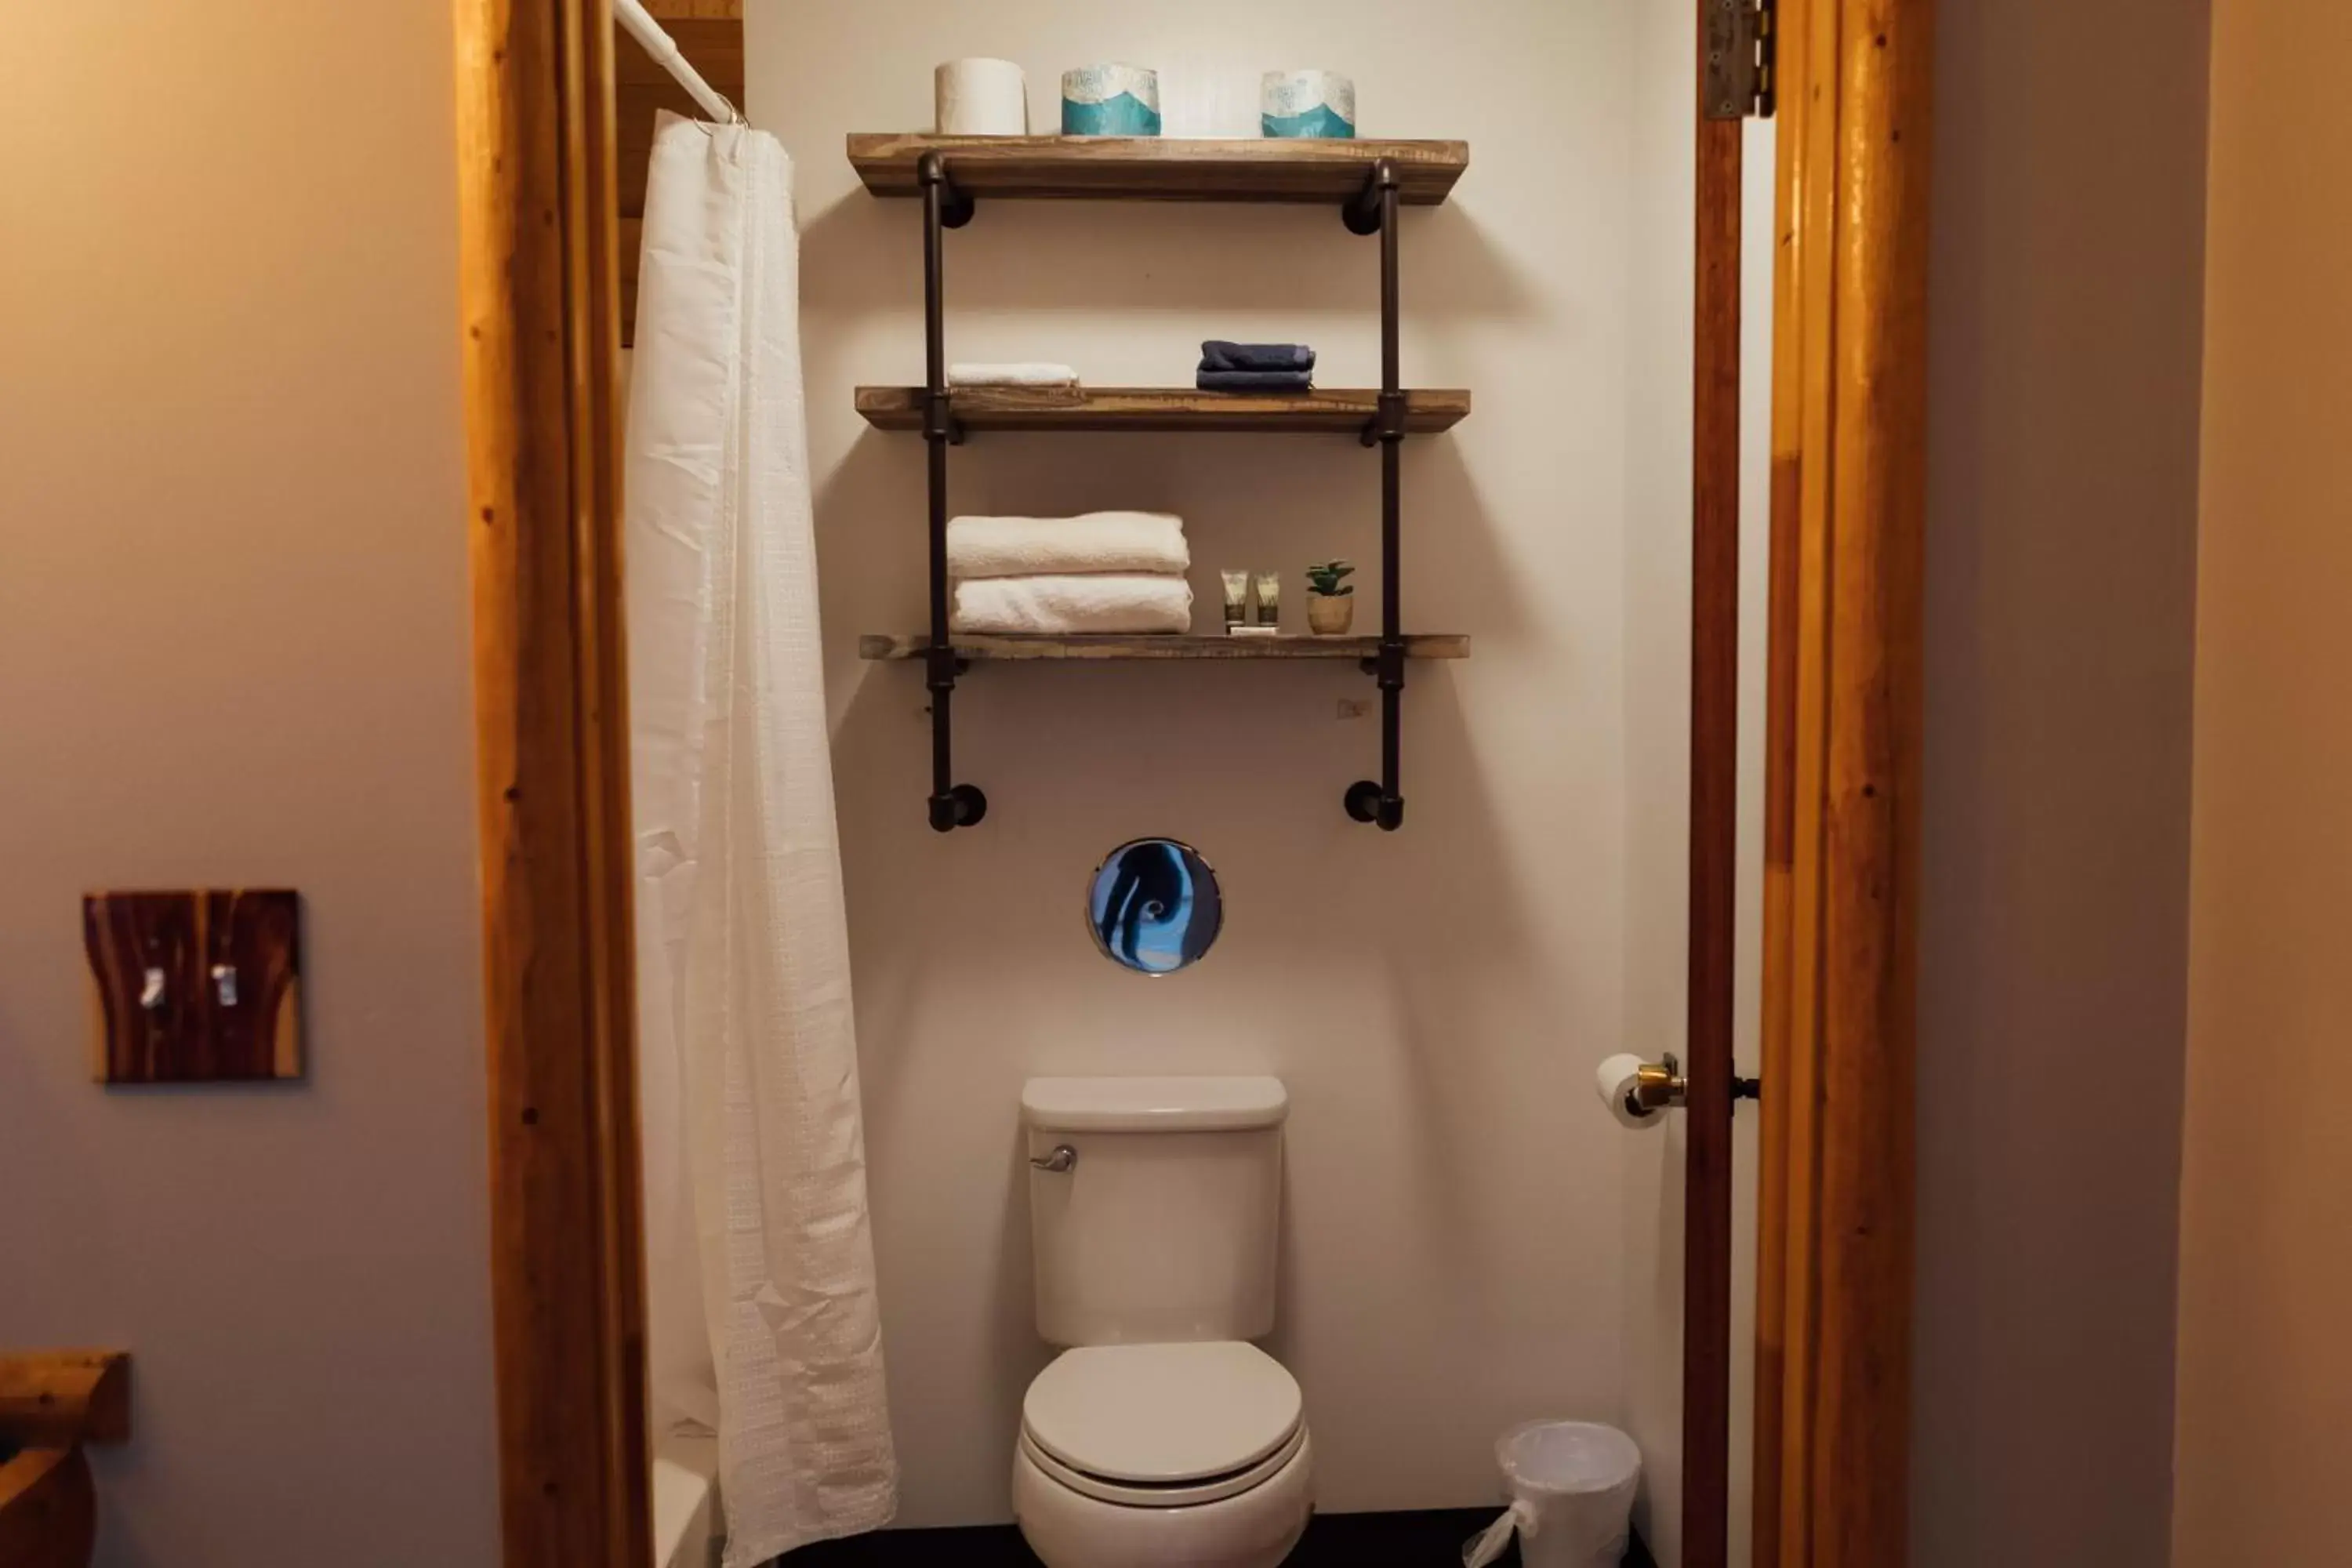 Toilet, Bathroom in Teton Peaks Resort